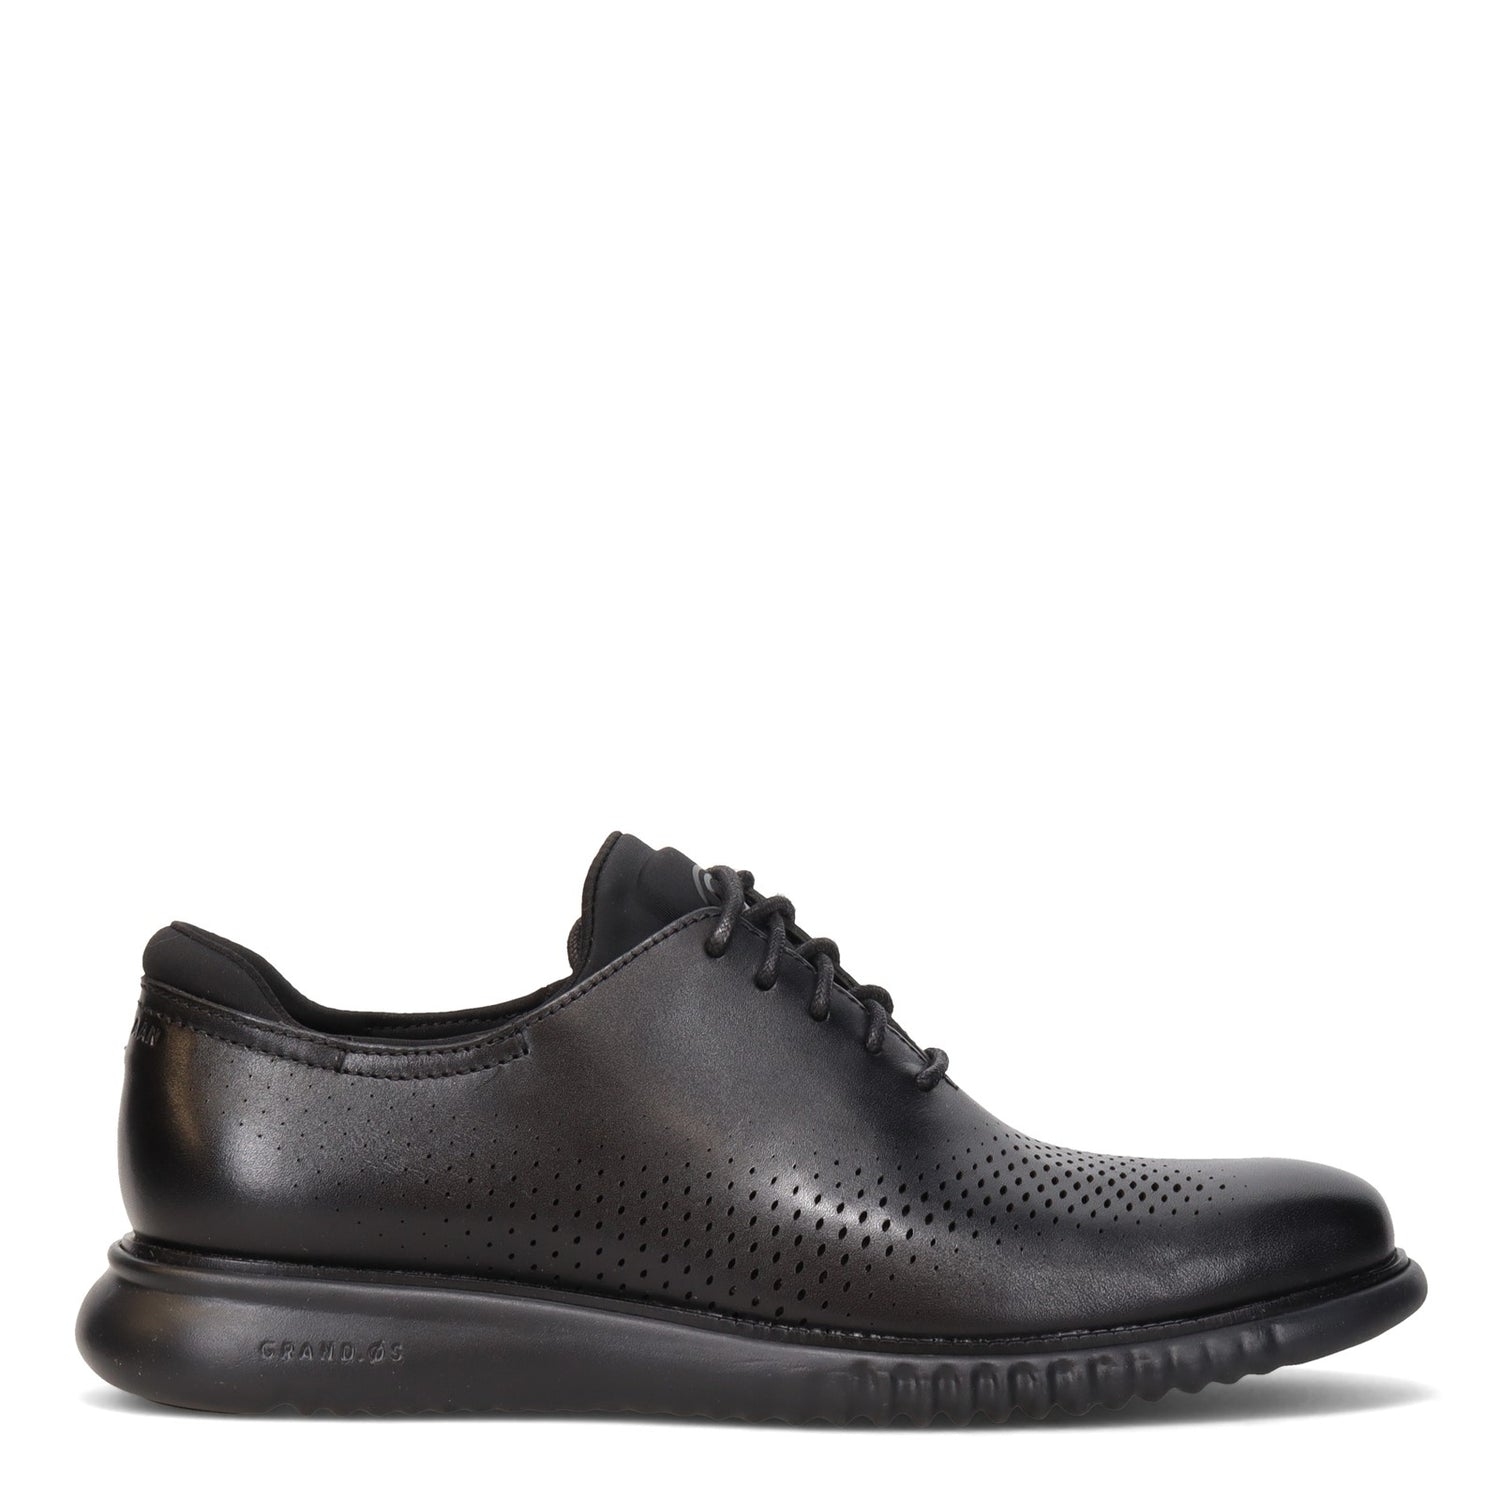 Peltz Shoes  Men's Cole Haan 2.ZEROGRAND Laser Oxford Black/Black C23832